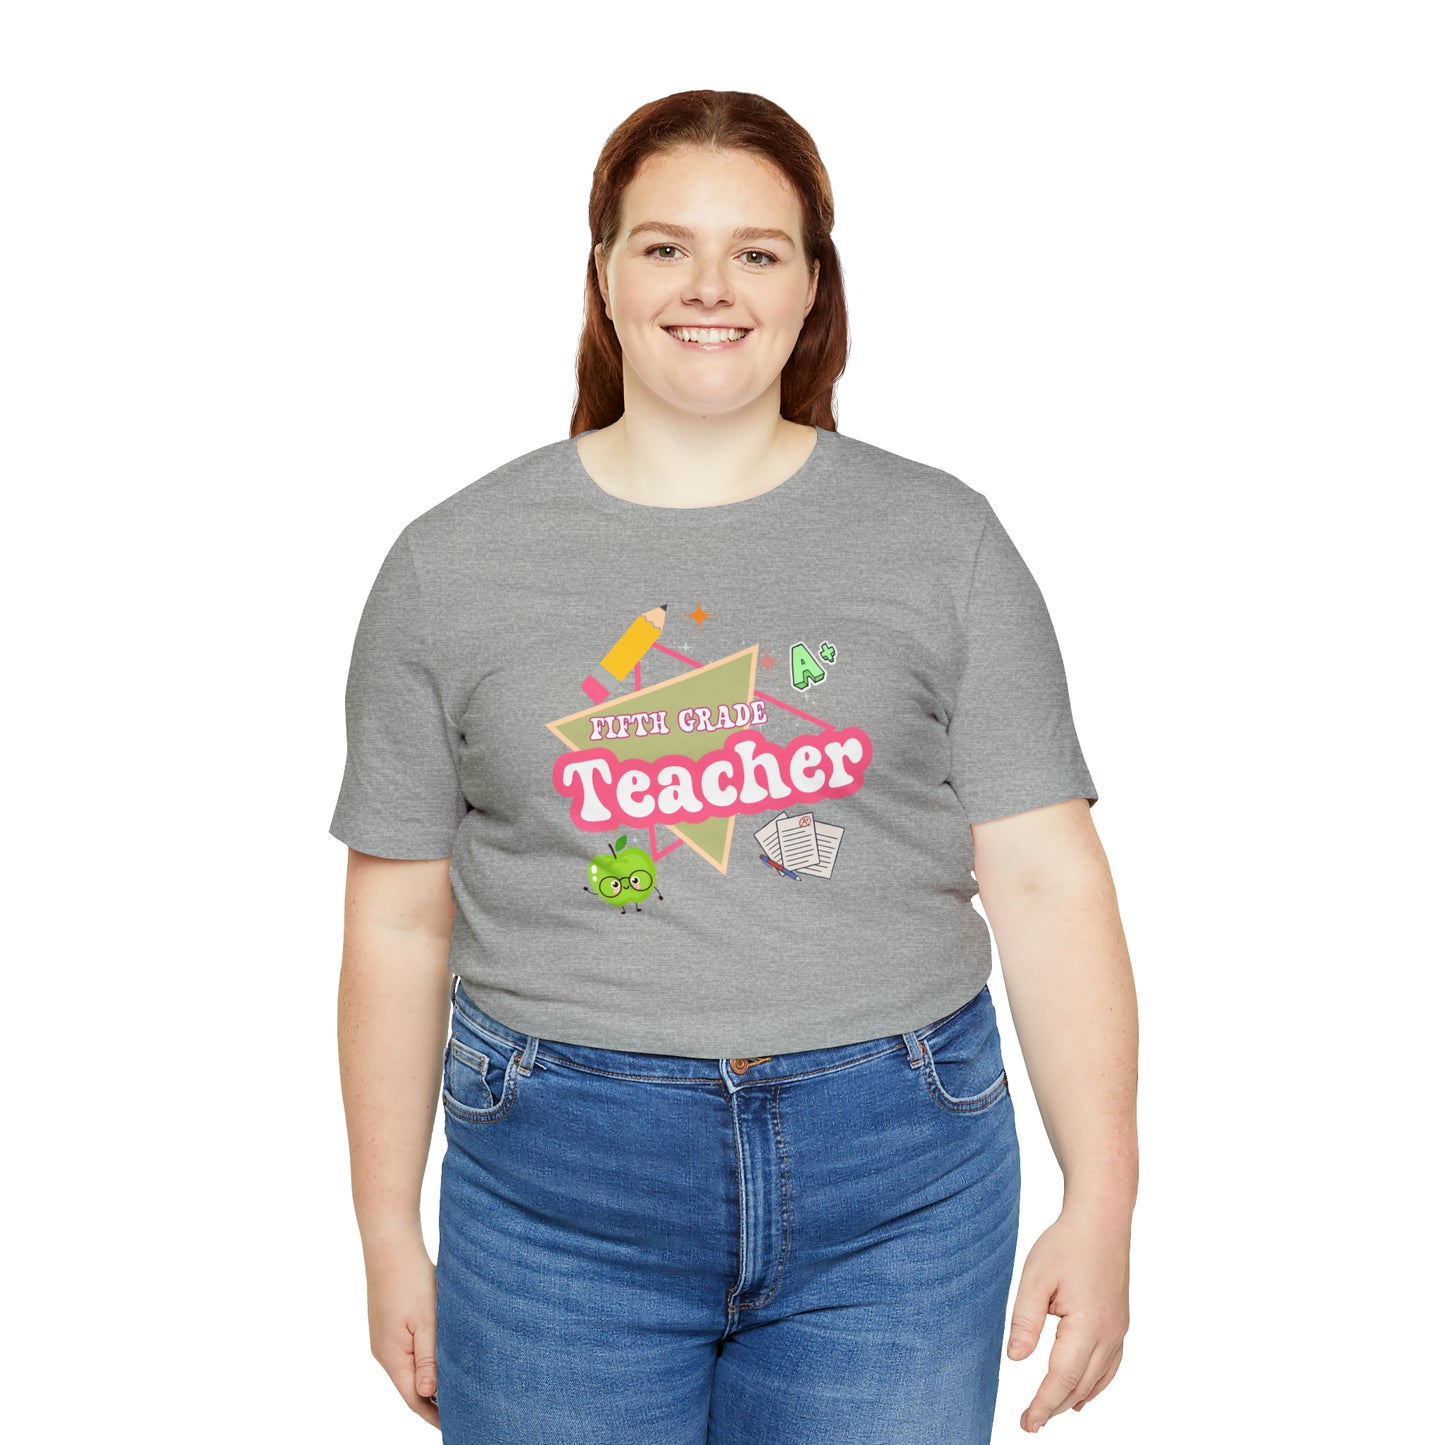 Fifth Grade Teacher Shirt, Teacher Tshirt Retro 6th Grade, Back to school Teacher, Appreciation Teacher Tee Gifts, T553